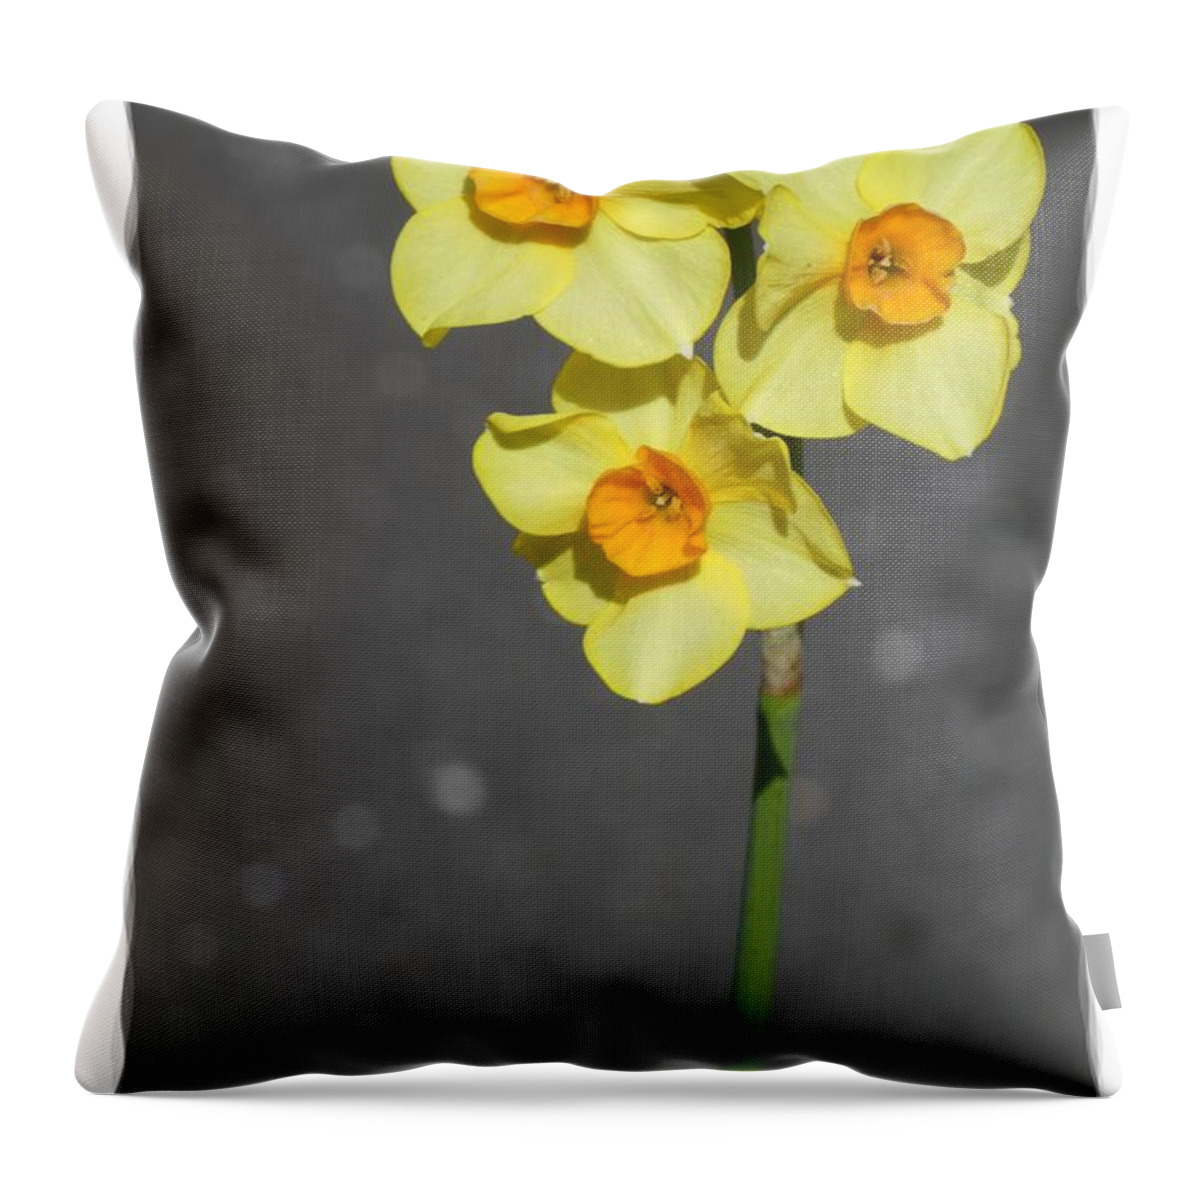 Digital Art Throw Pillow featuring the photograph Yellow Flowers 4 by Jean Bernard Roussilhe